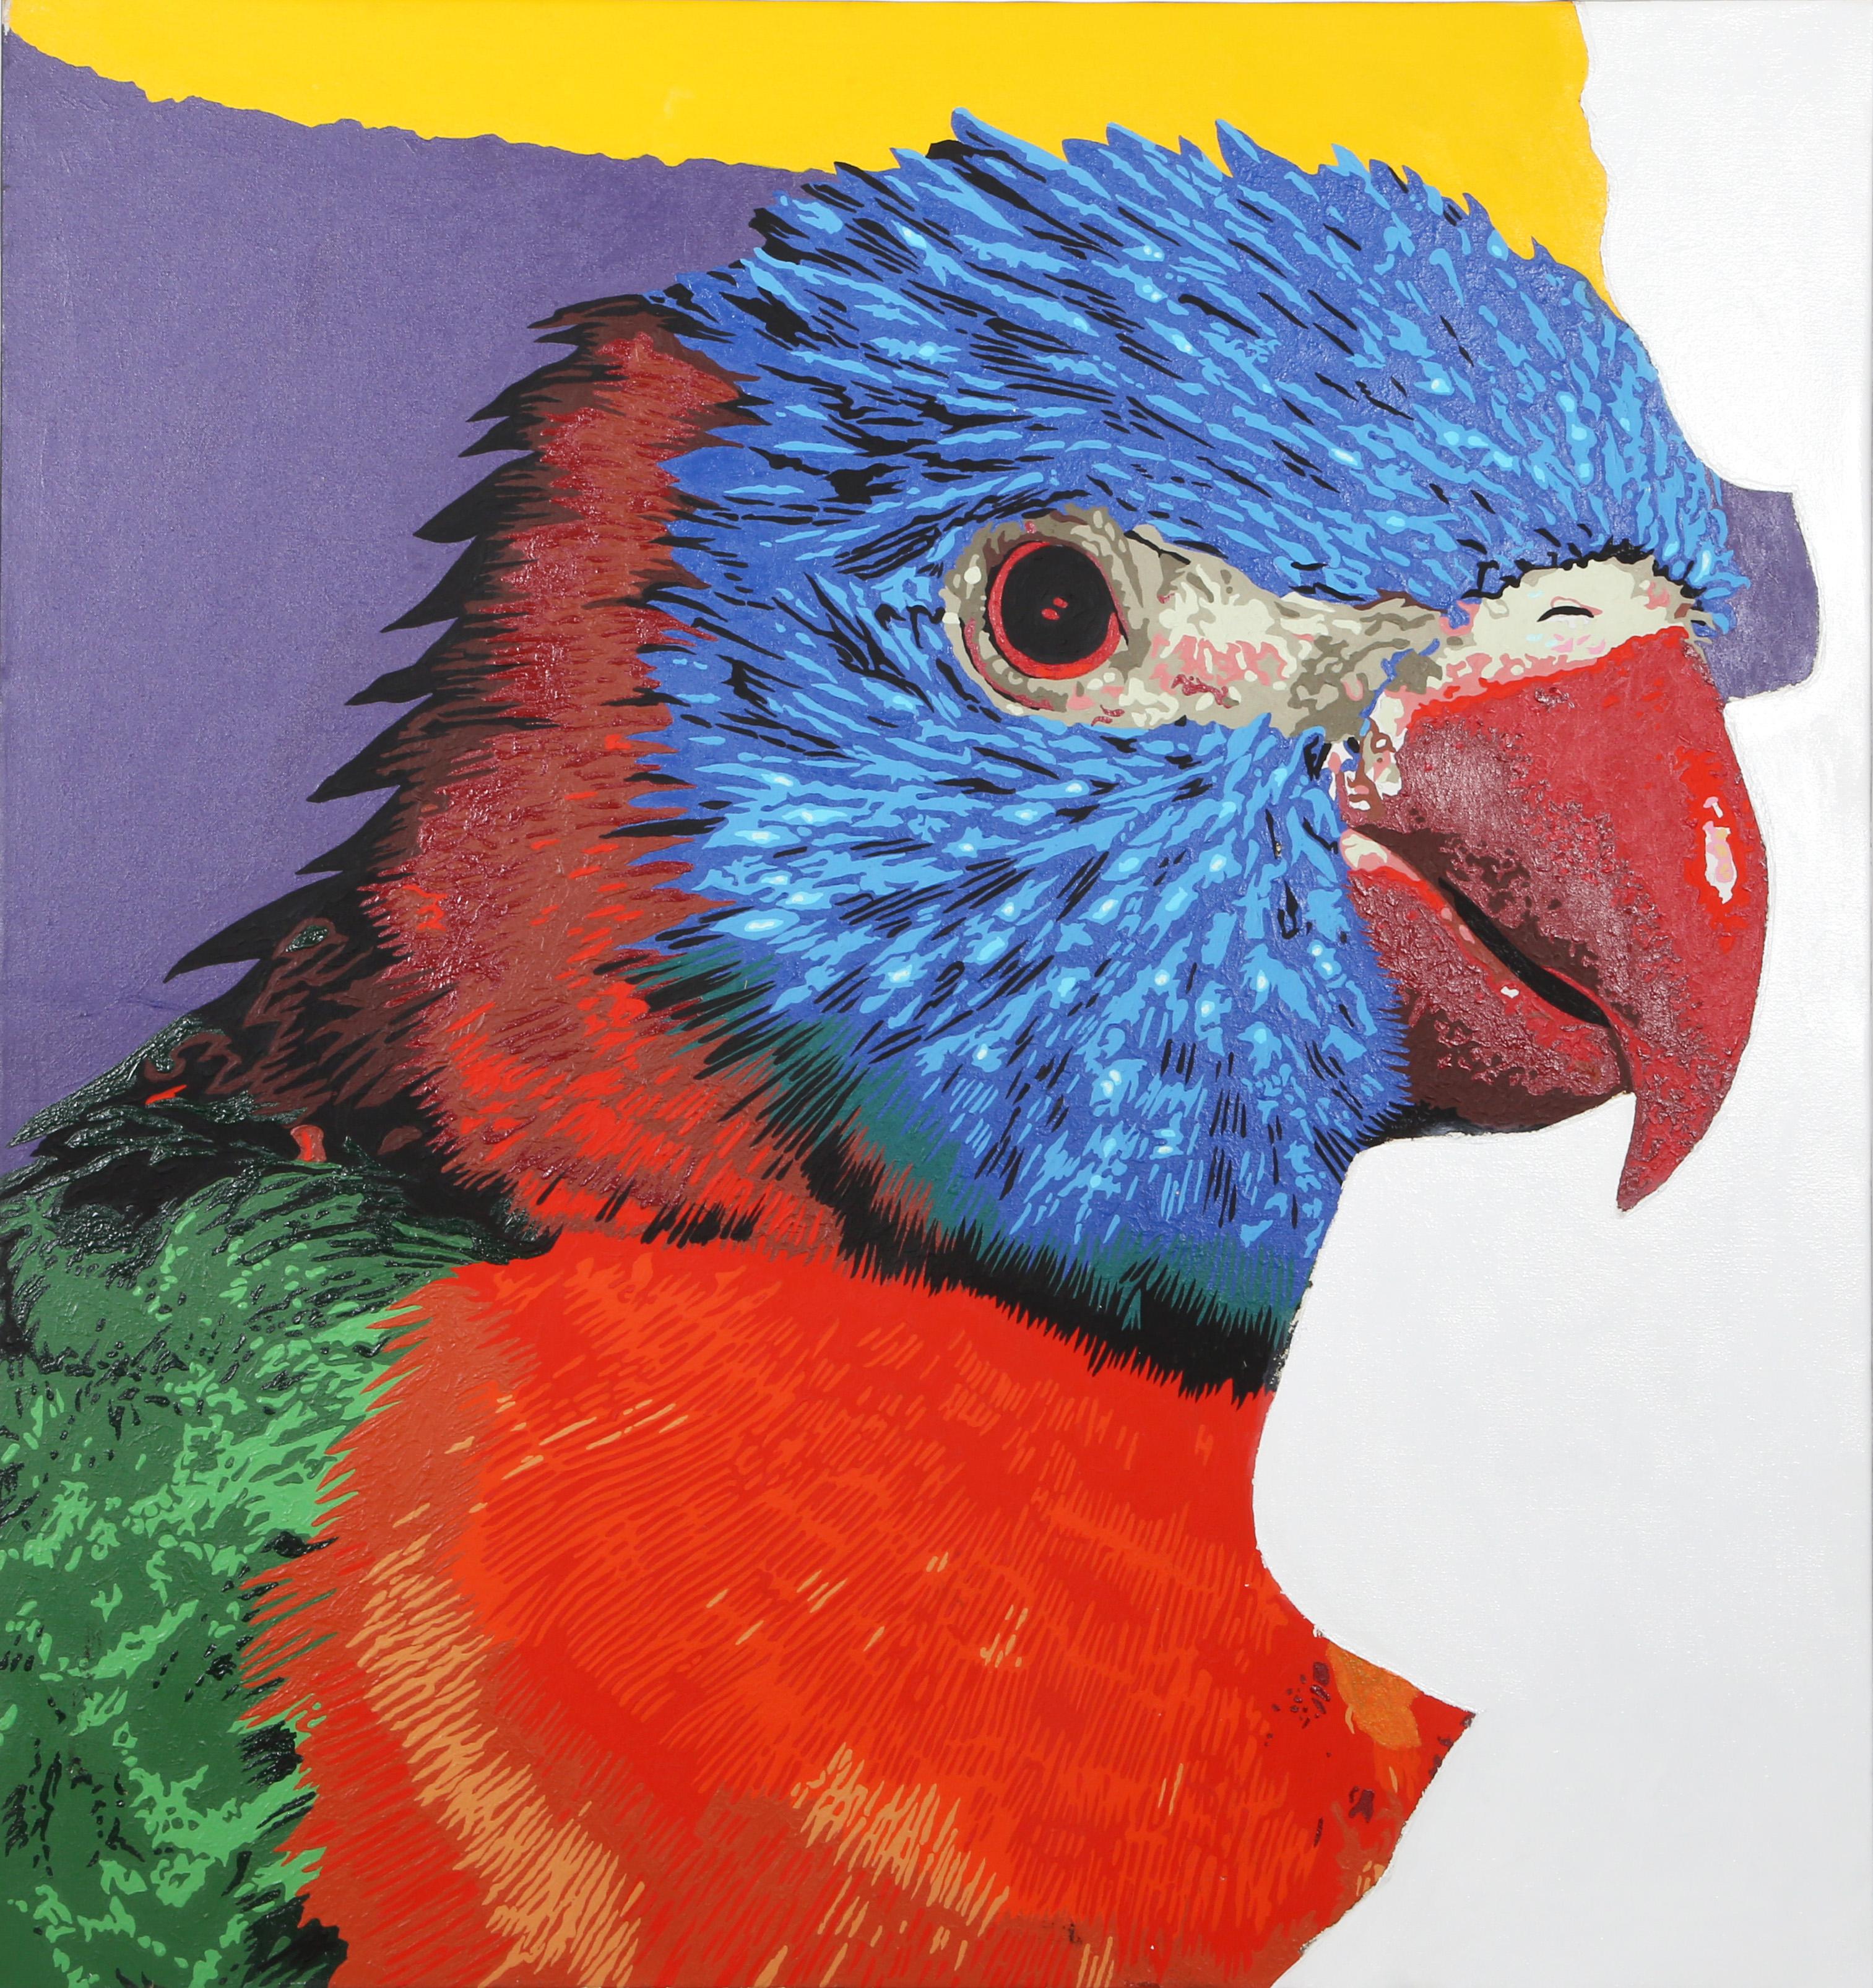 Perroquet
Michael Knigin, Américain (1942-2011)
Acrylique sur toile
Taille : 39.5 x 37.25 in. (100.33 x 94.62 cm)

Portrait en gros plan d'un loriquet arc-en-ciel, une espèce de perroquet que l'on trouve en Australie. Ses couleurs vives sont